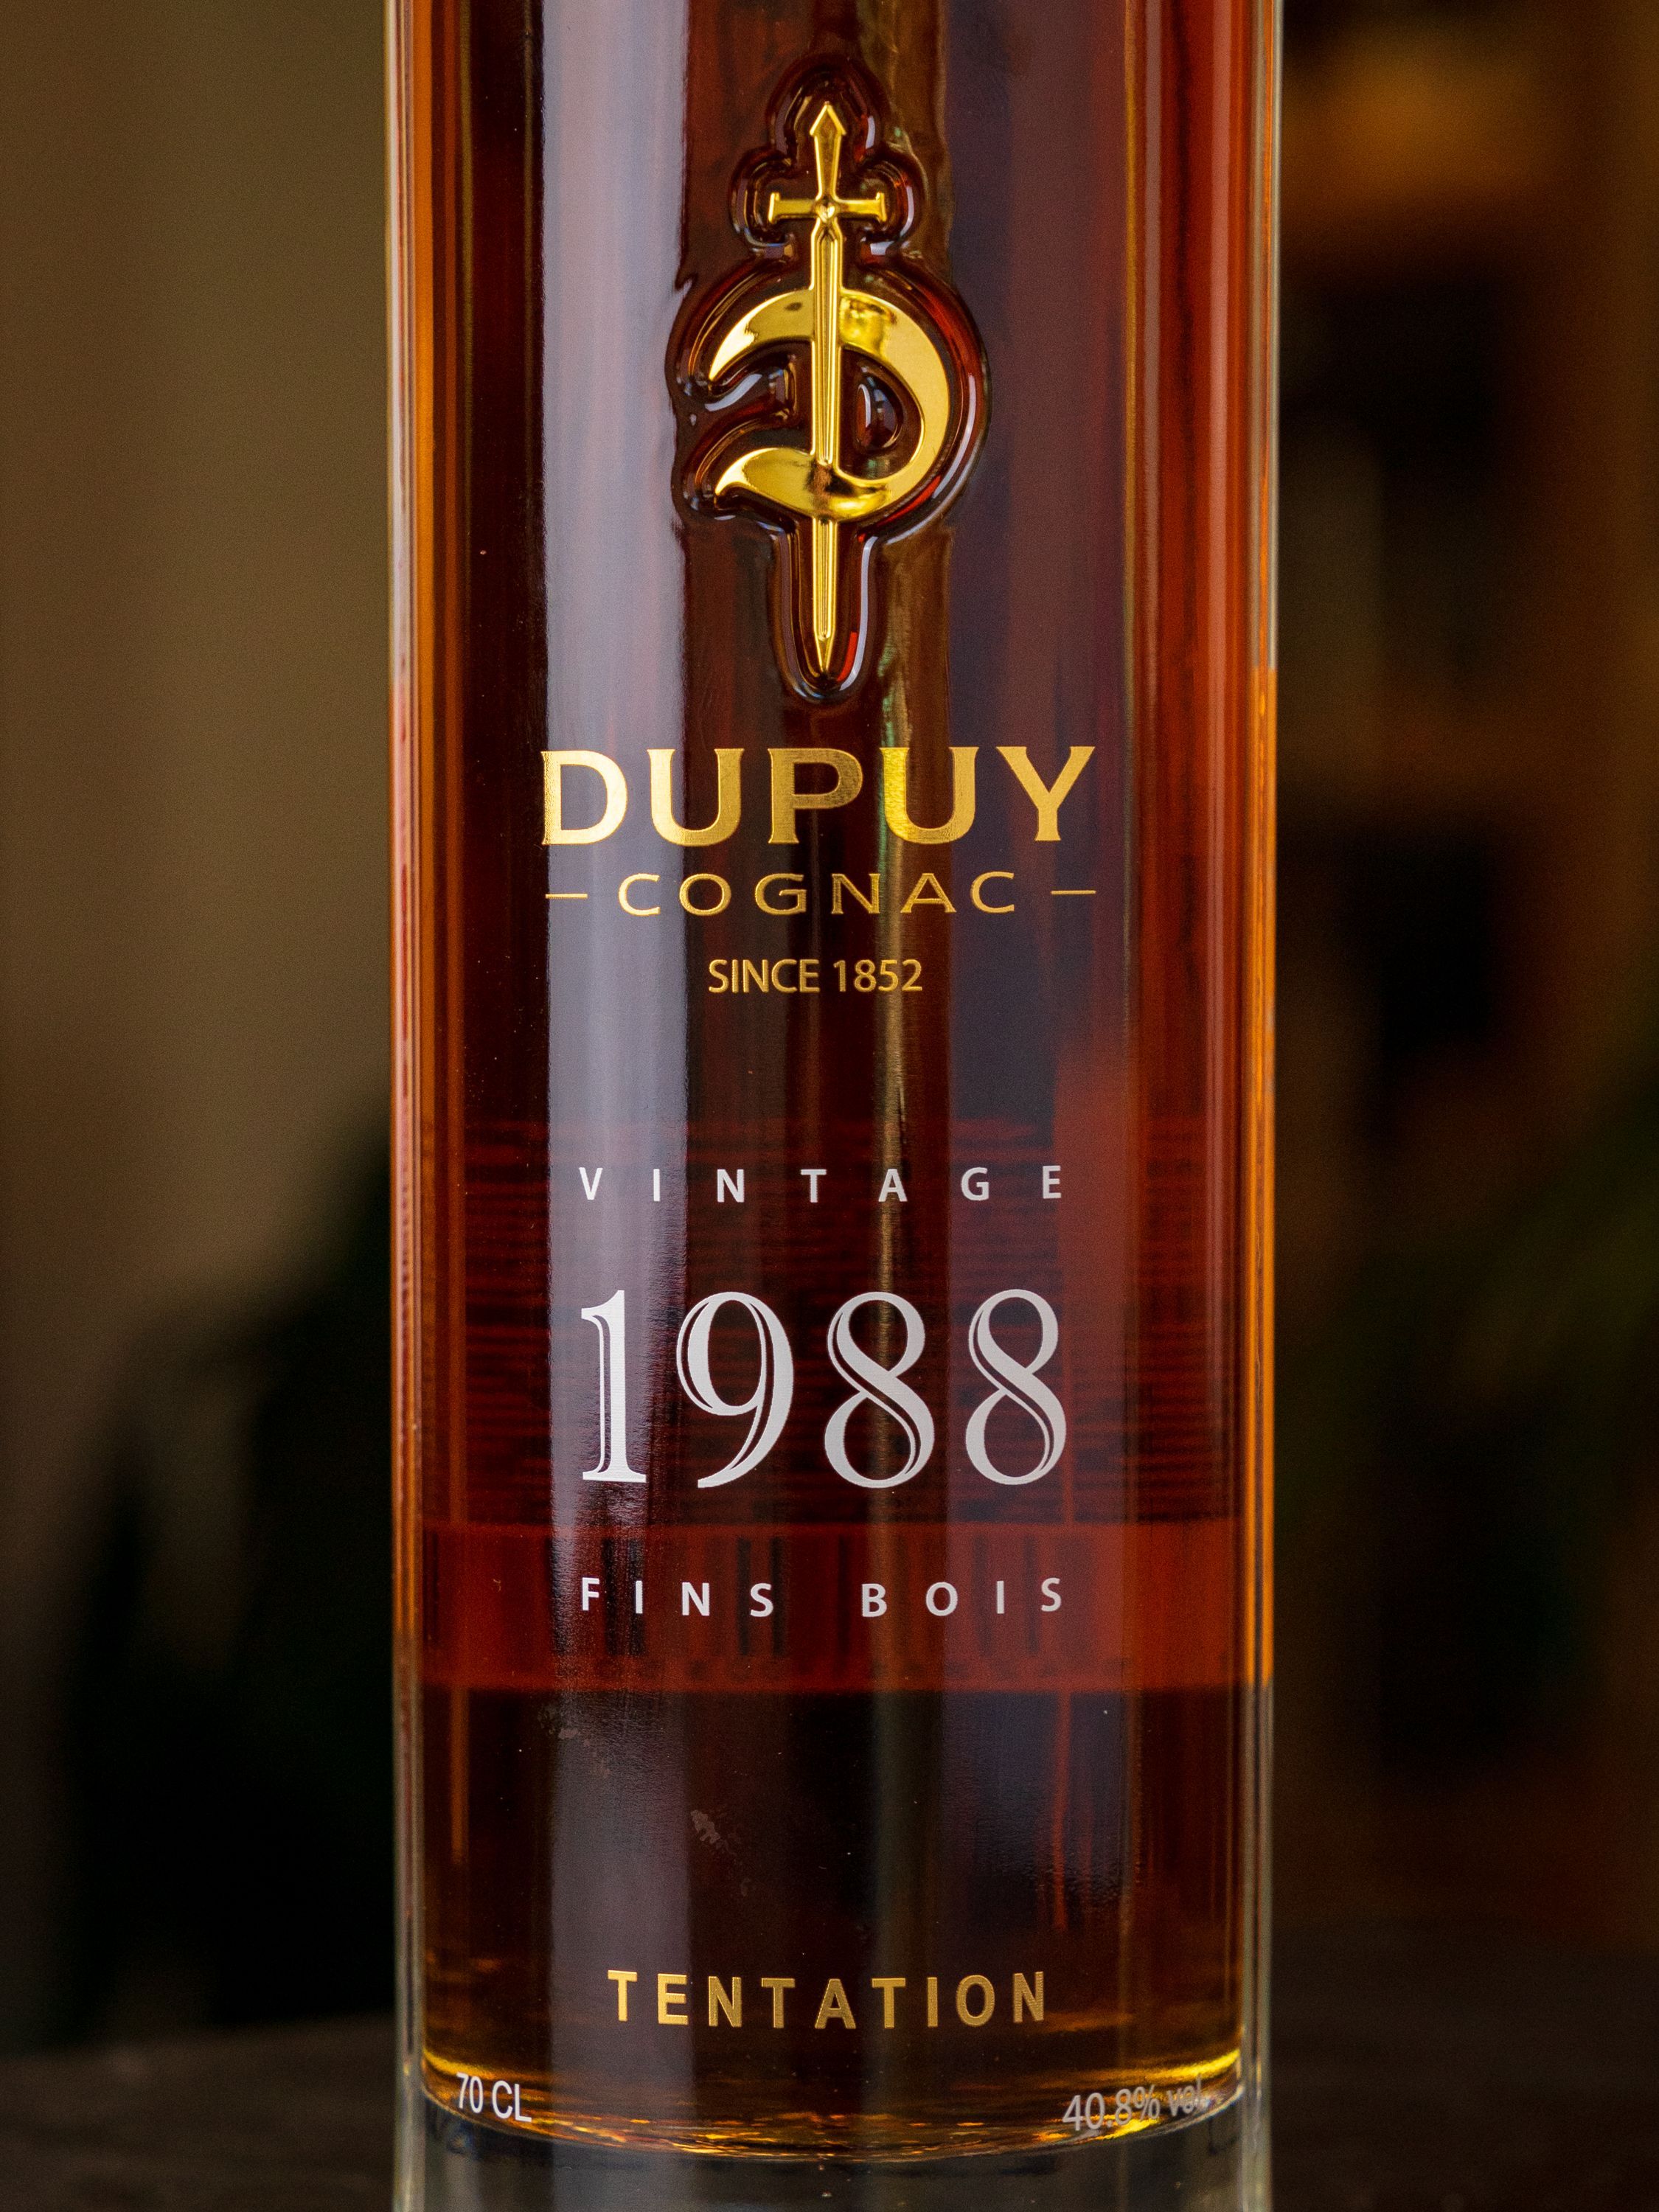 Этикетка Dupuy vintage 1988